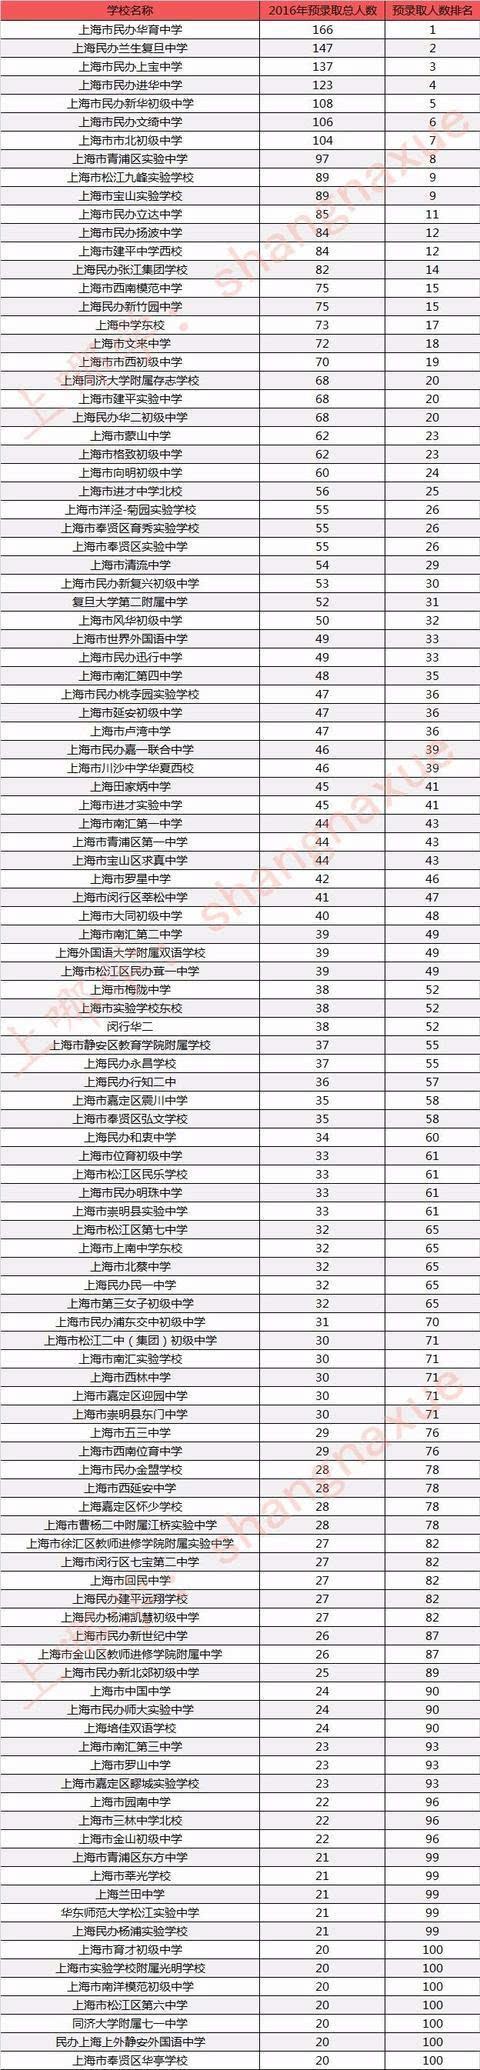 上海初中排名前100位2020 - 中学教育